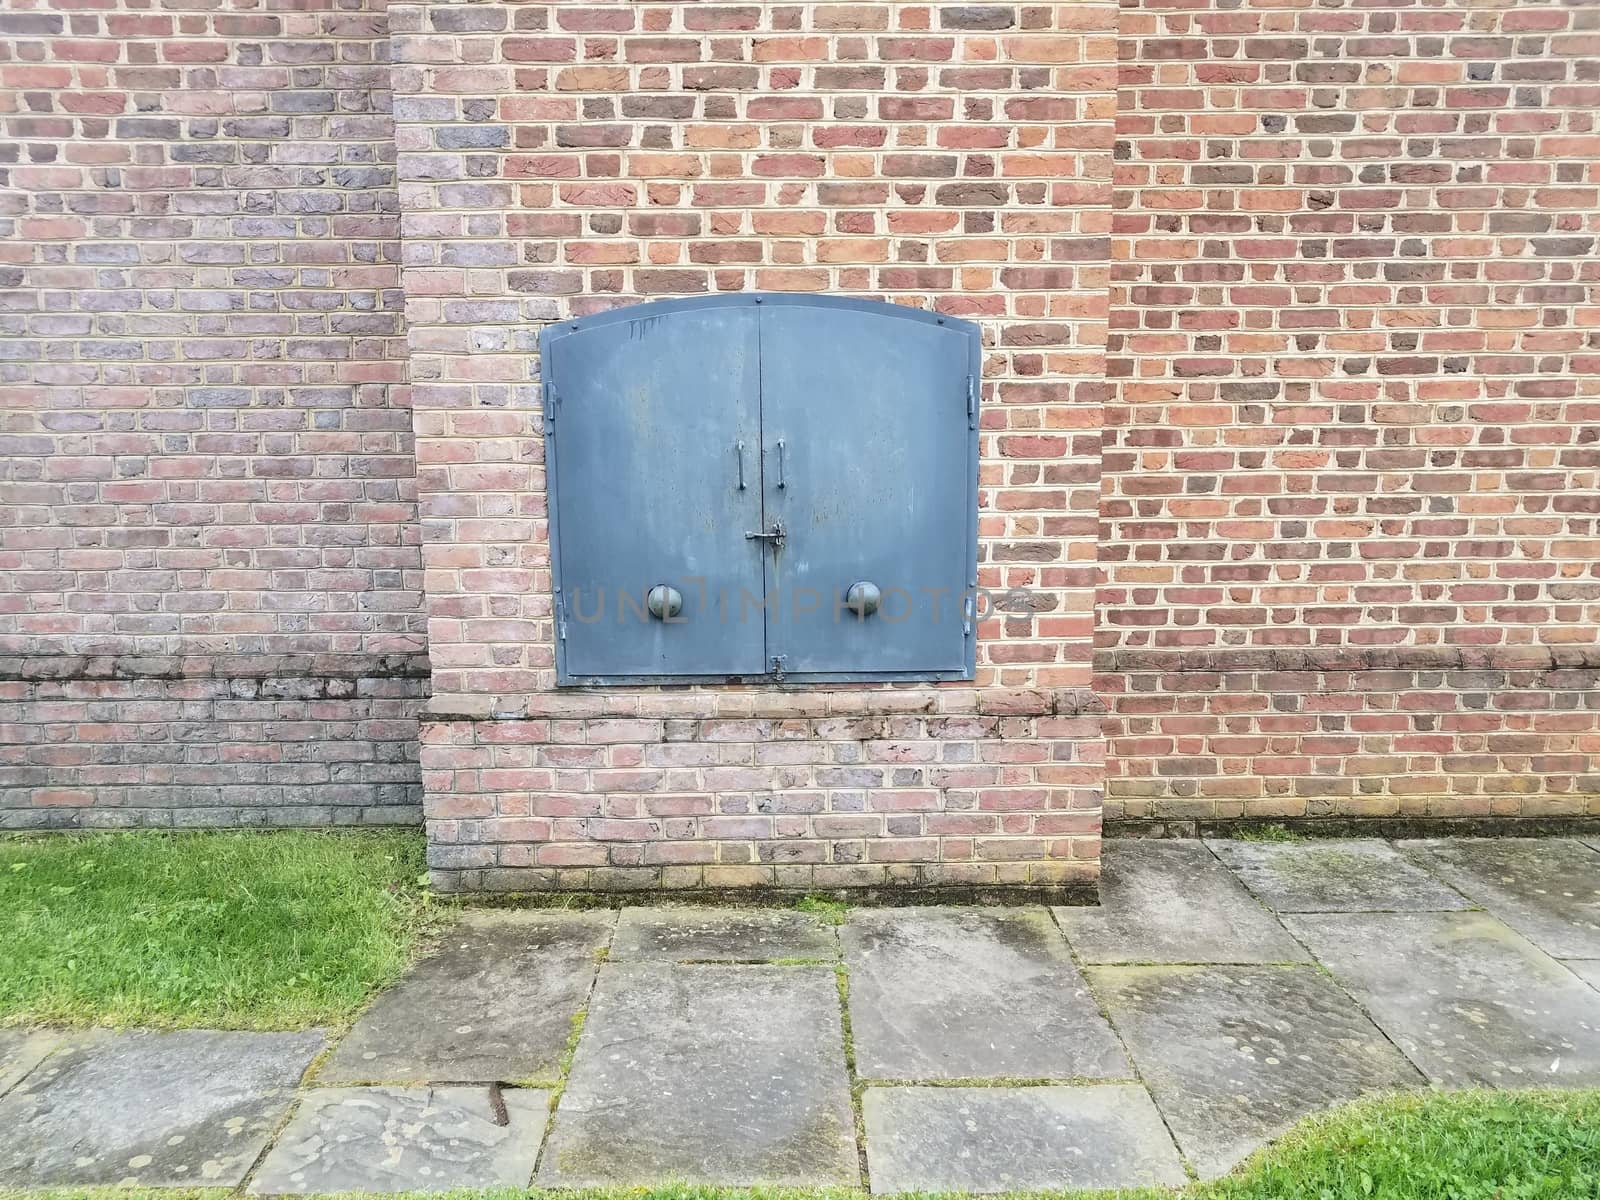 red brick wall or masonry and iron metal door